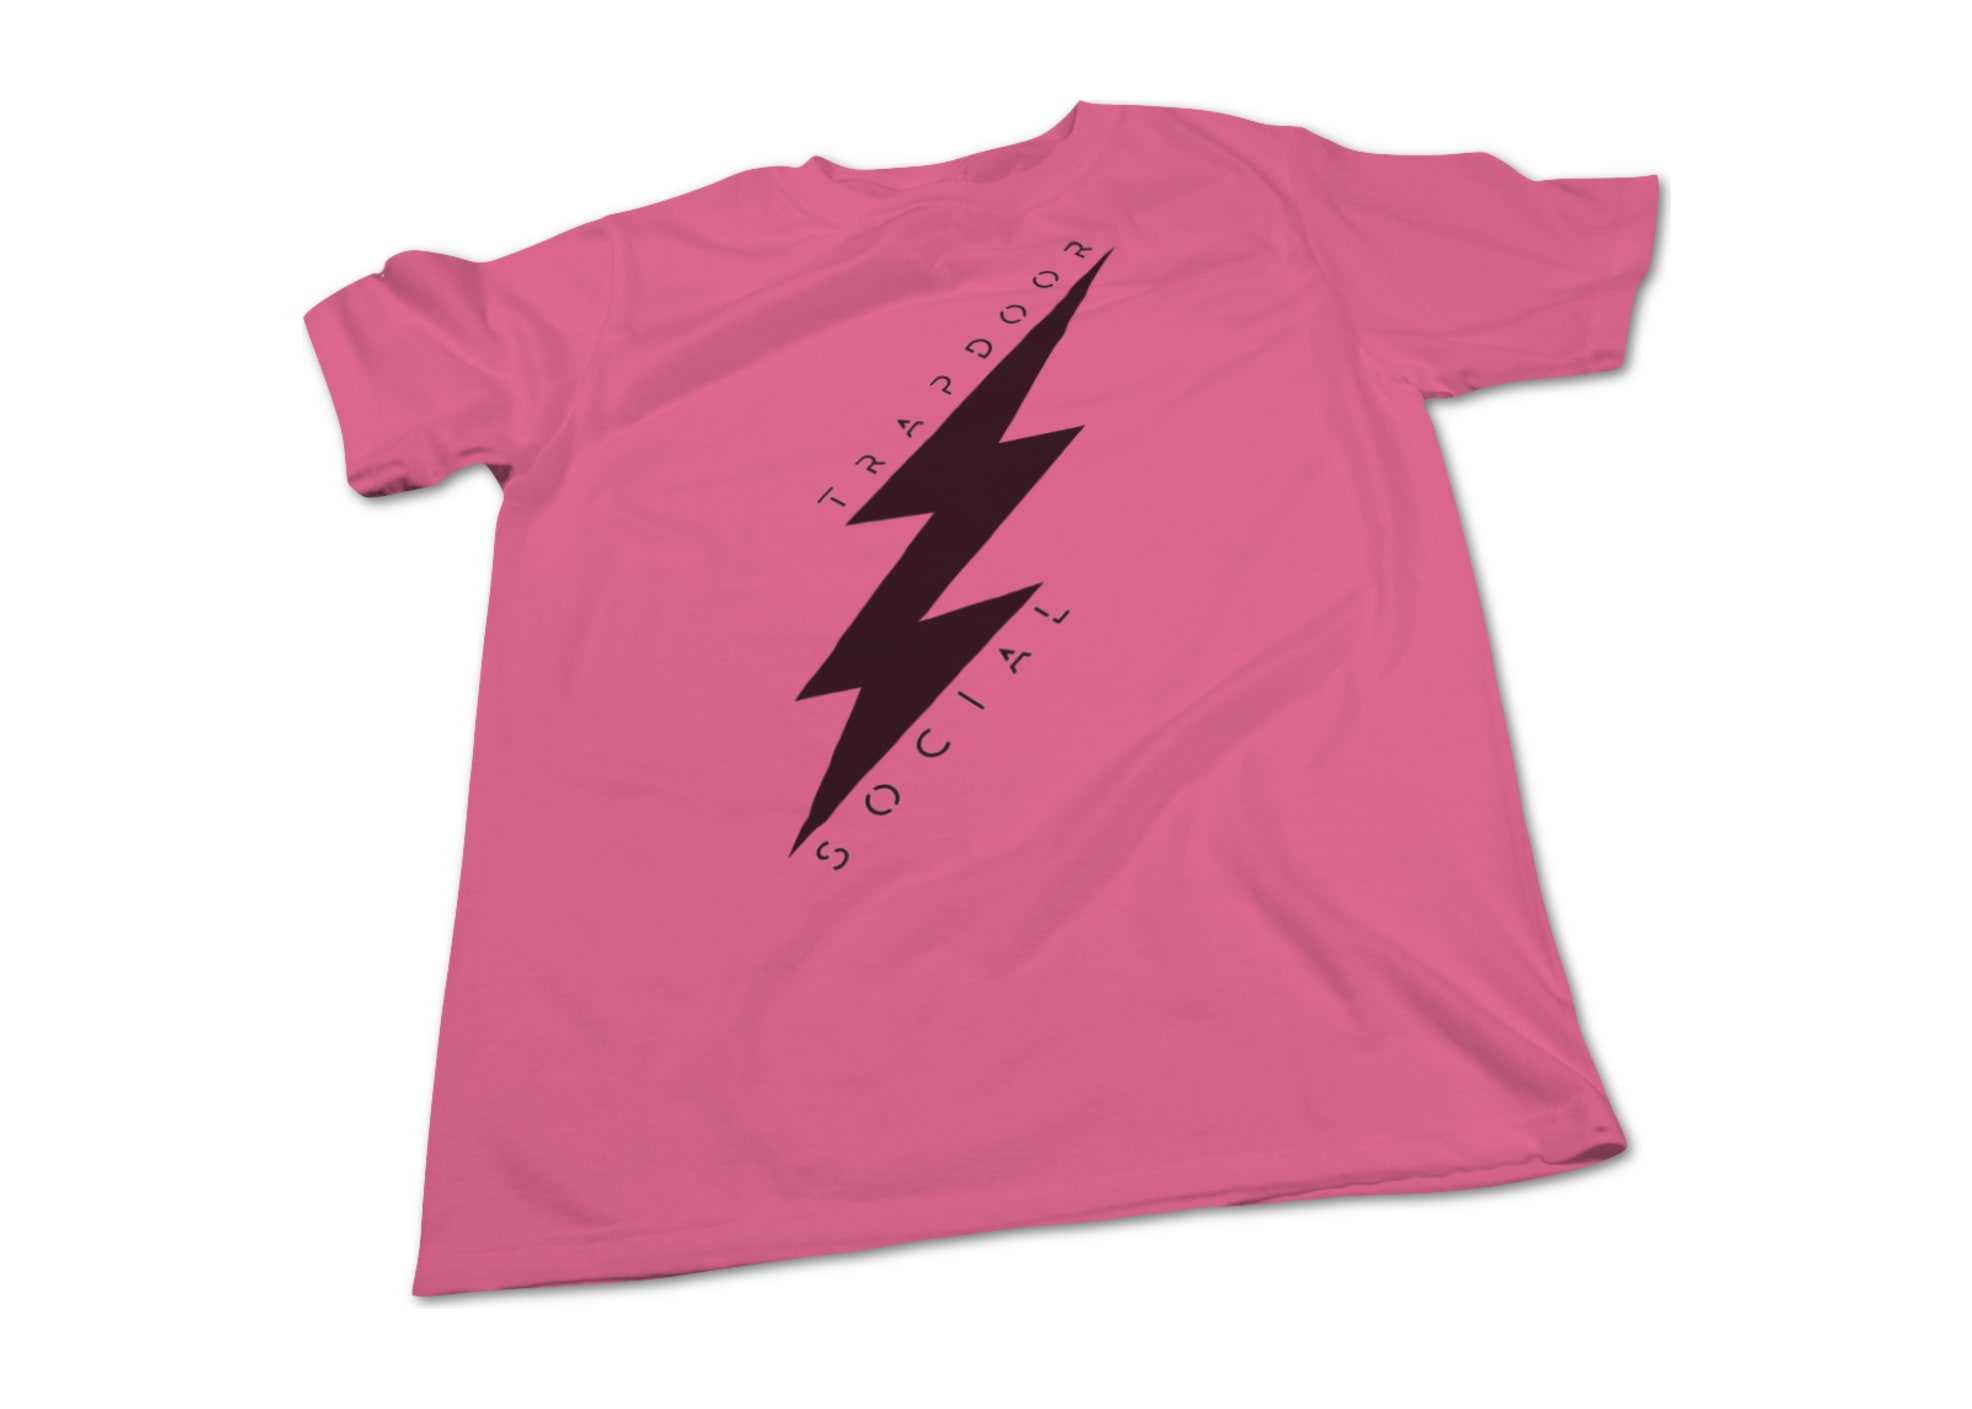 Trapdoor social lightning bolt   pink black 1476752770